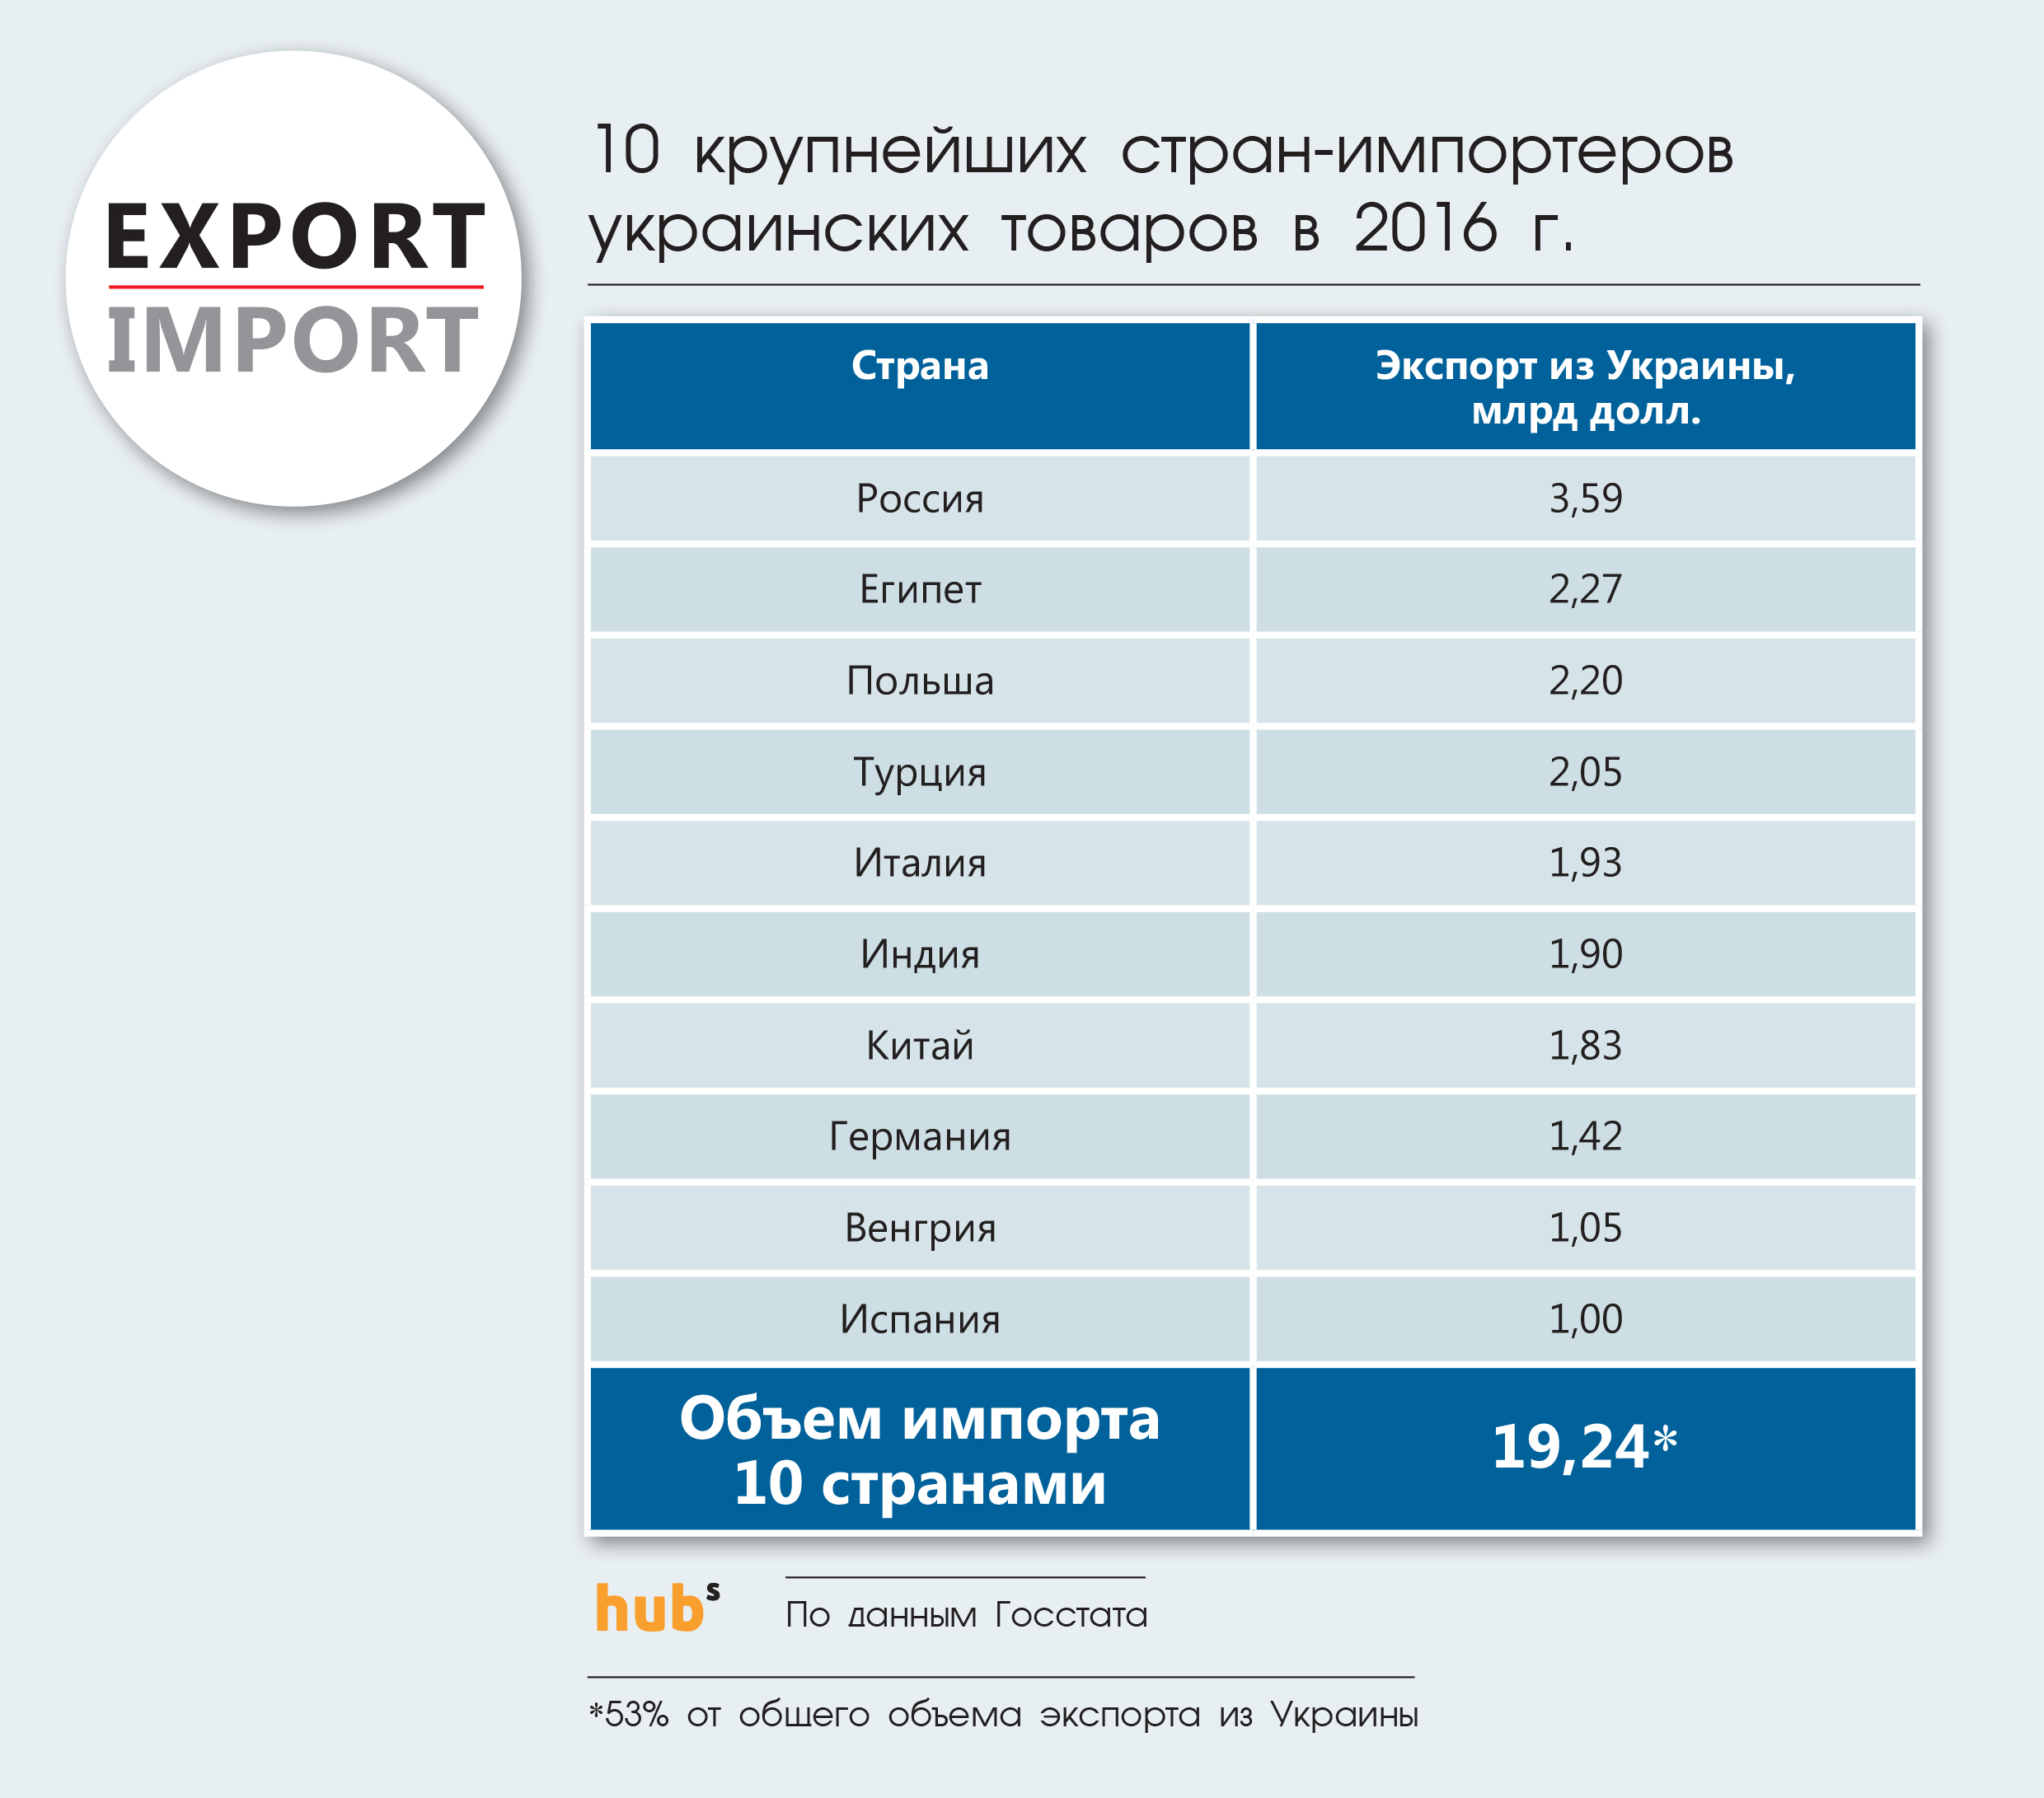 10 крупнейших стран-импортеров украинских товаров в 2016 г.